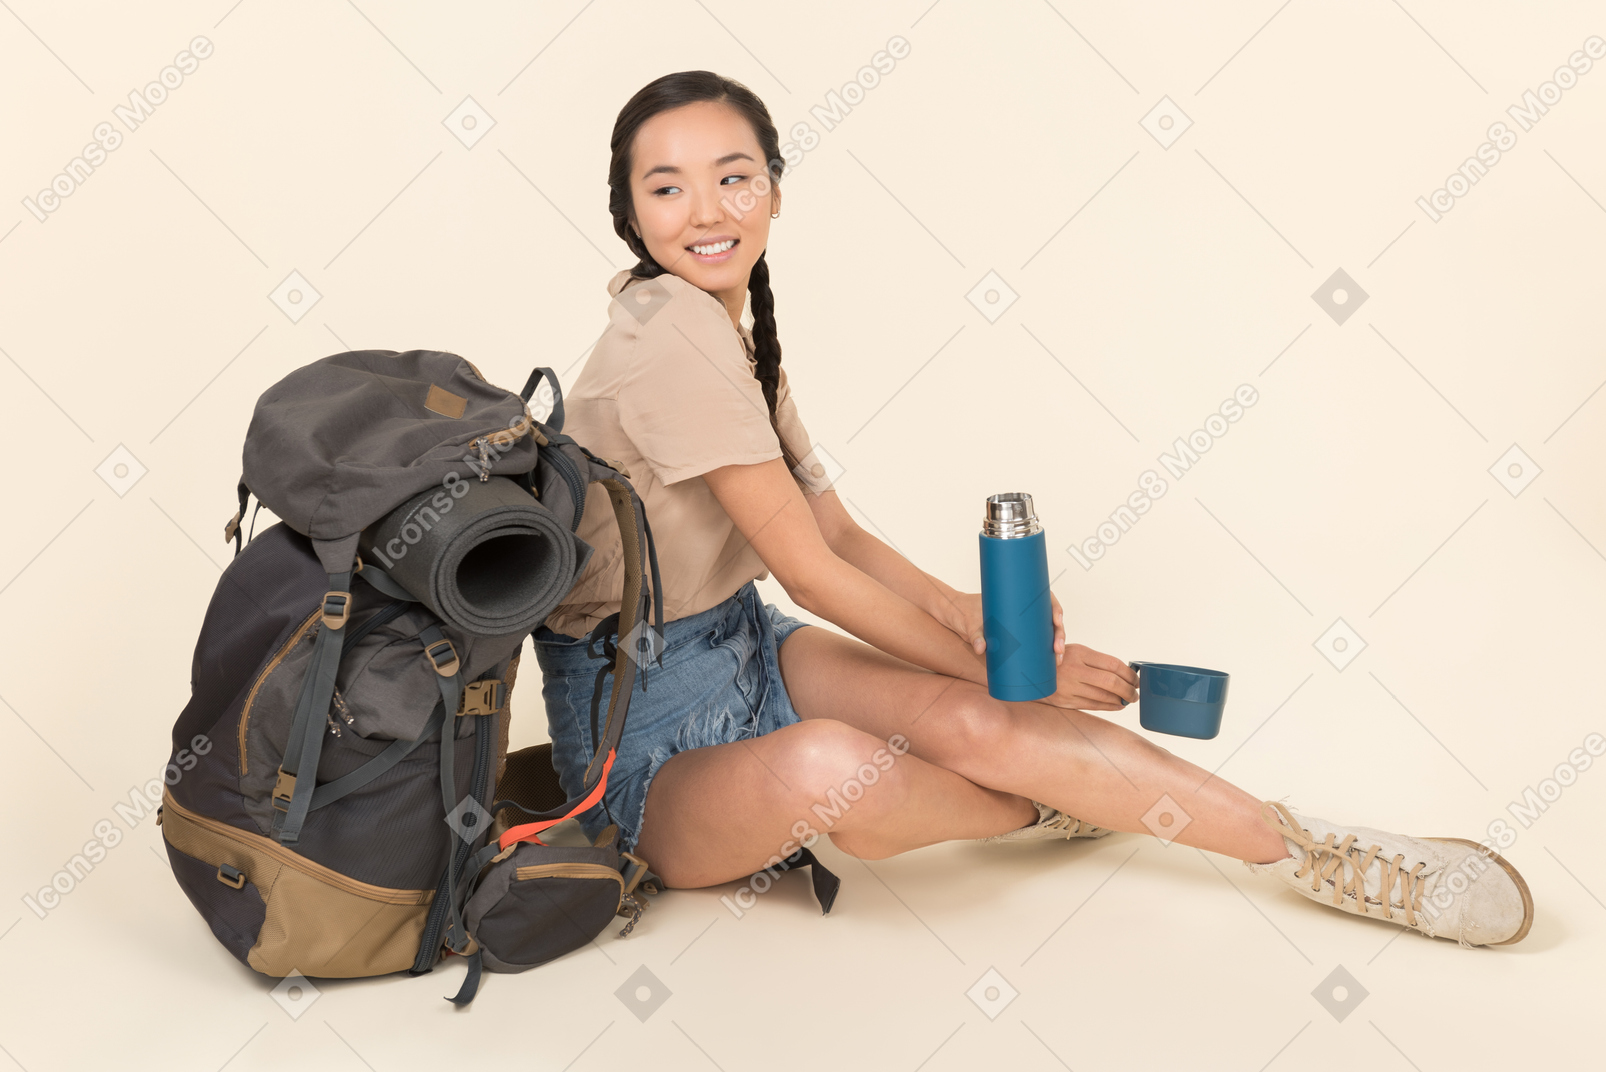 Jeune femme asiatique assise près de sac à dos et de manutention thermos